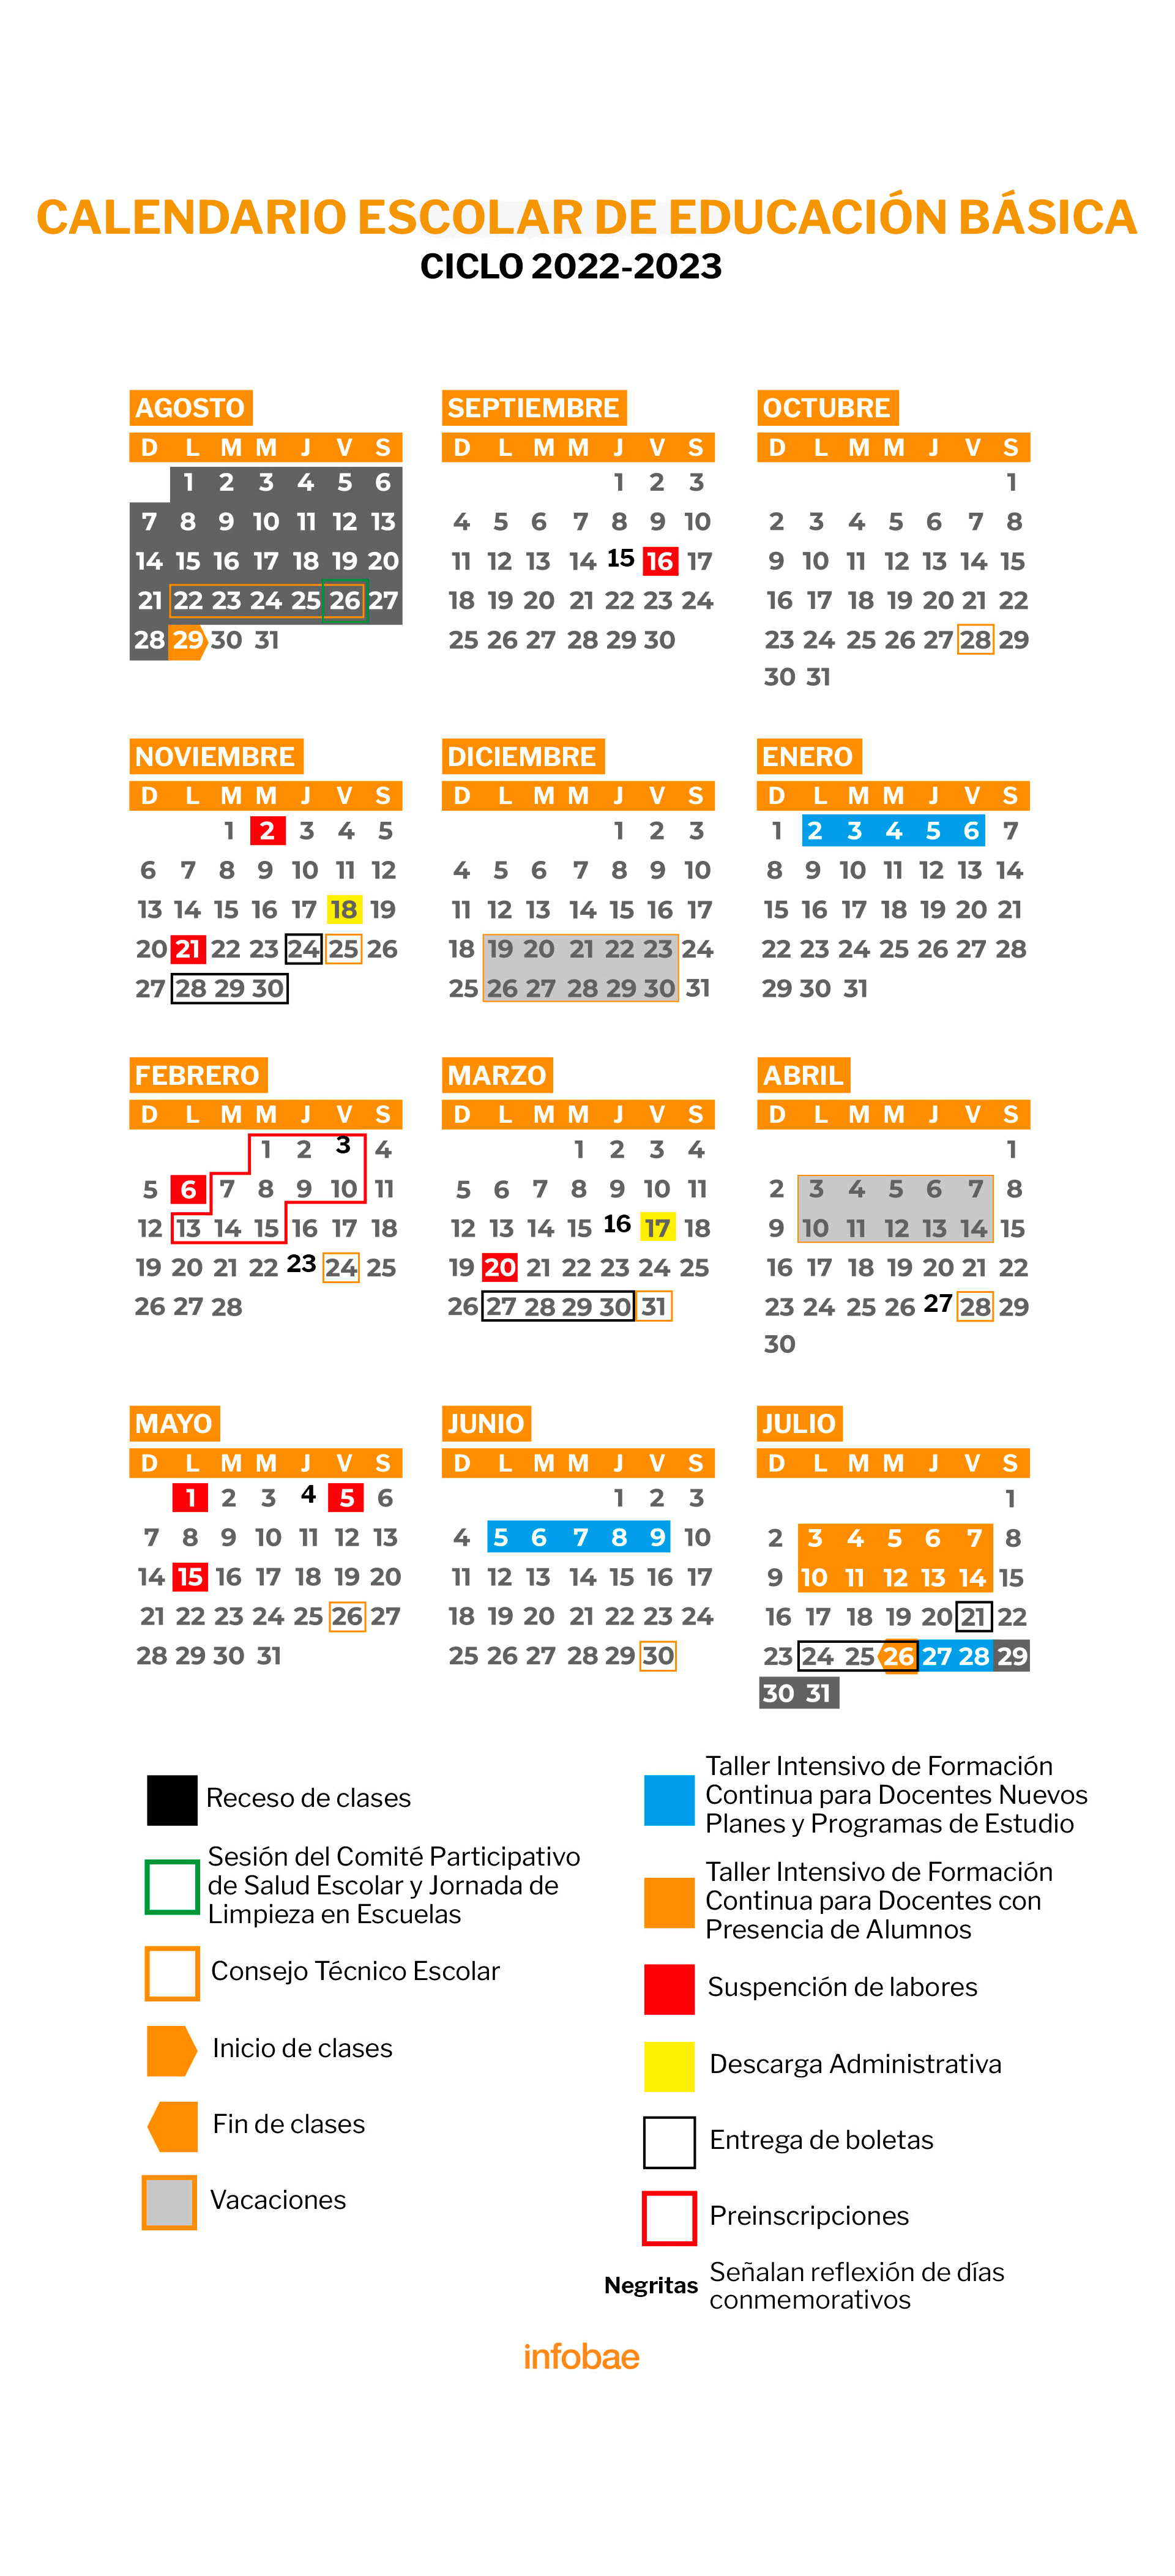 Calendario oficial del ciclo escolar 2022-2023 de la SEP. (Infobae)